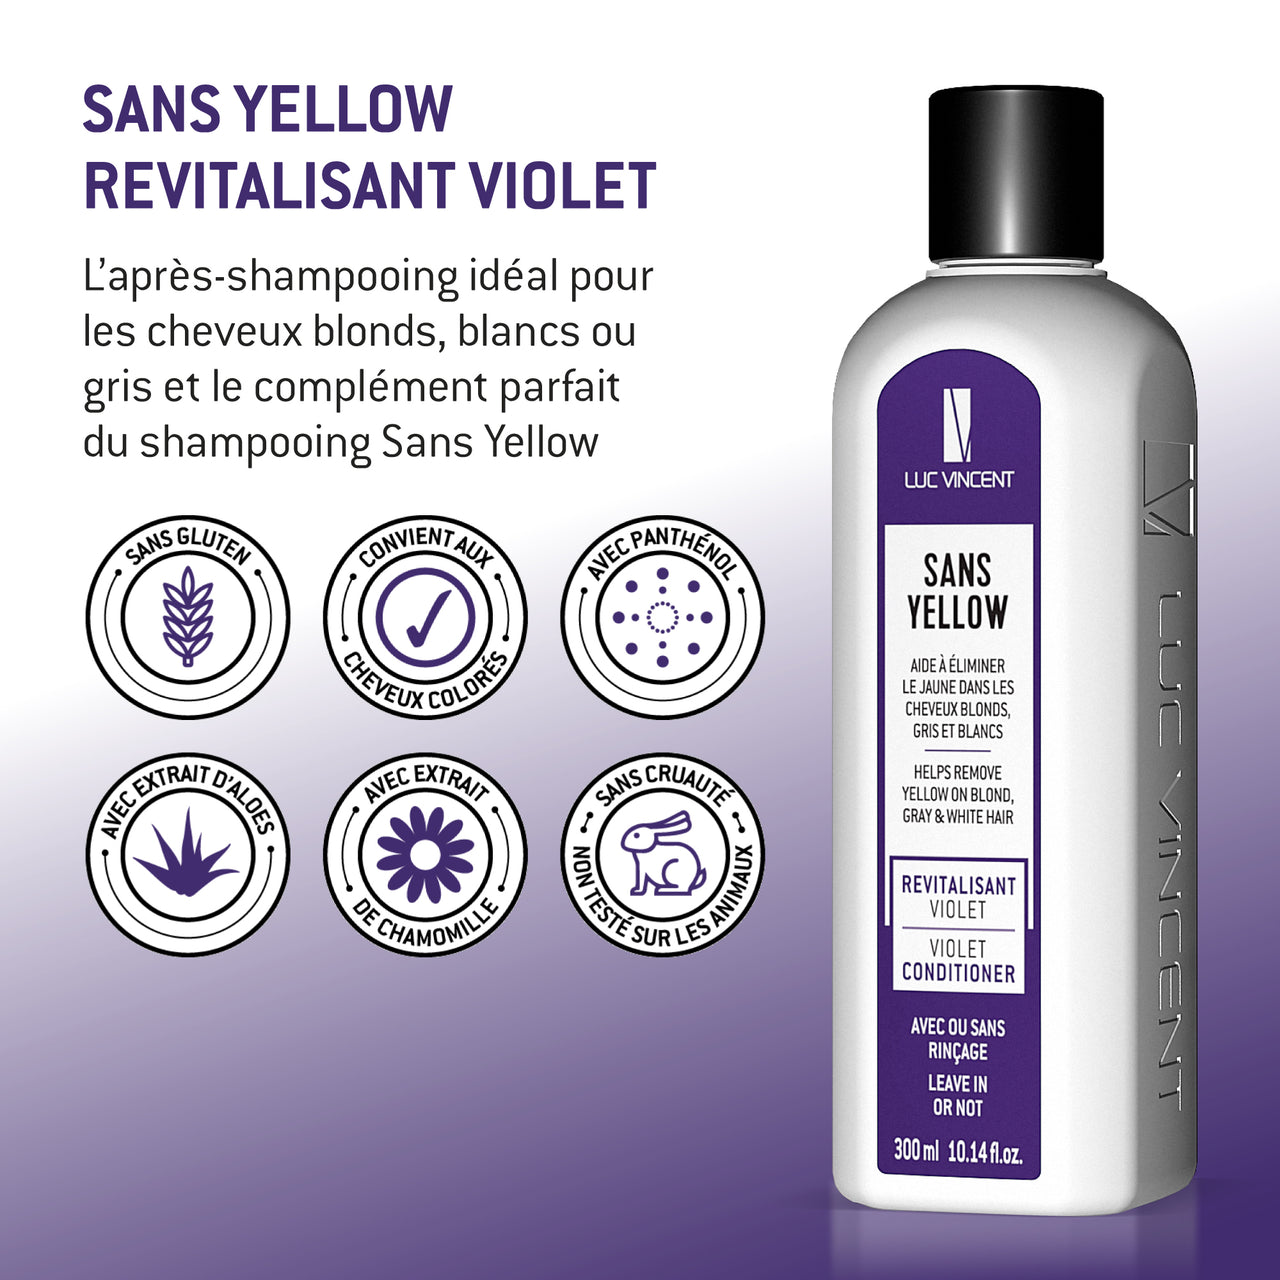 SANS YELLOW REVITALISANT VIOLET - Hydrate et aide à éliminer le jaune - Luc Vincent